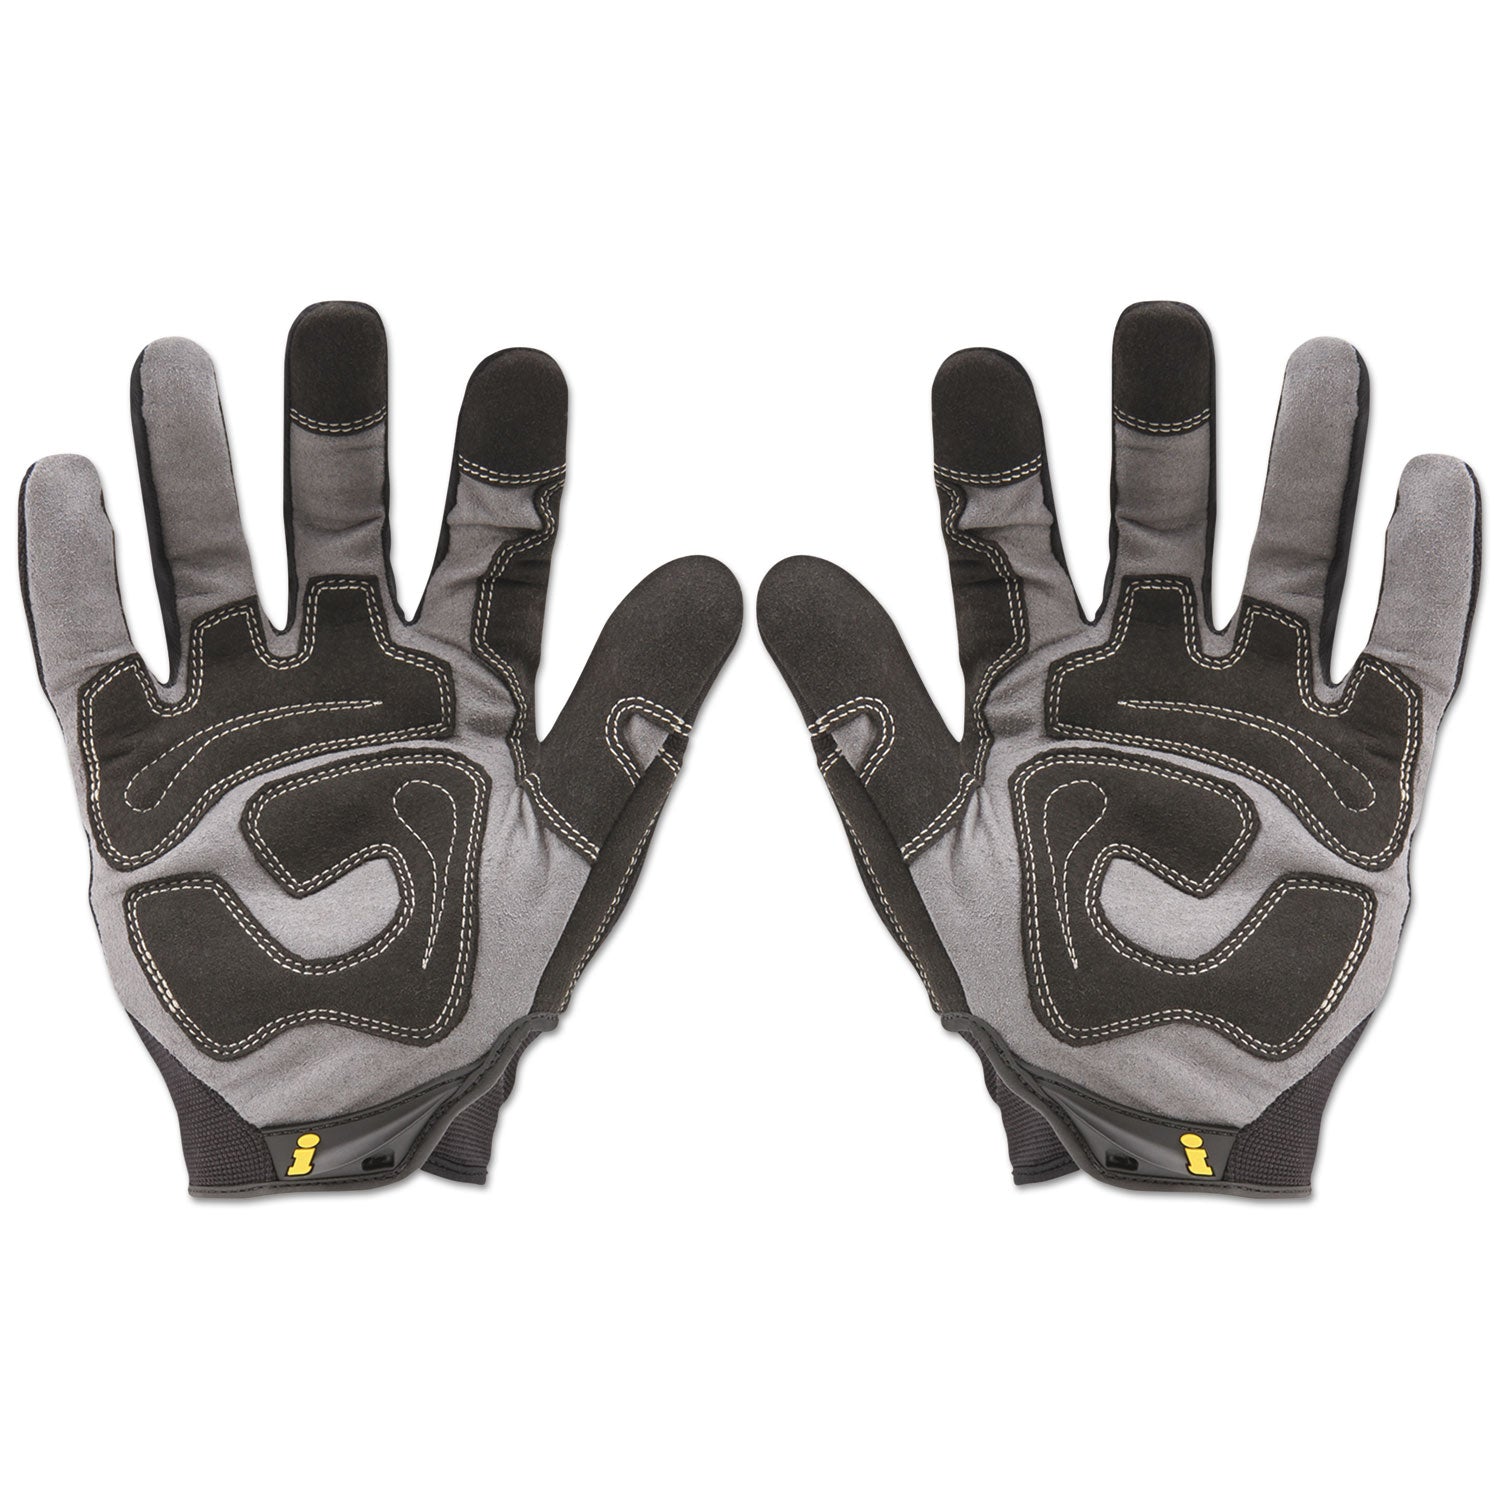 General Utility Spandex Gloves, Black, Large, Pair - 